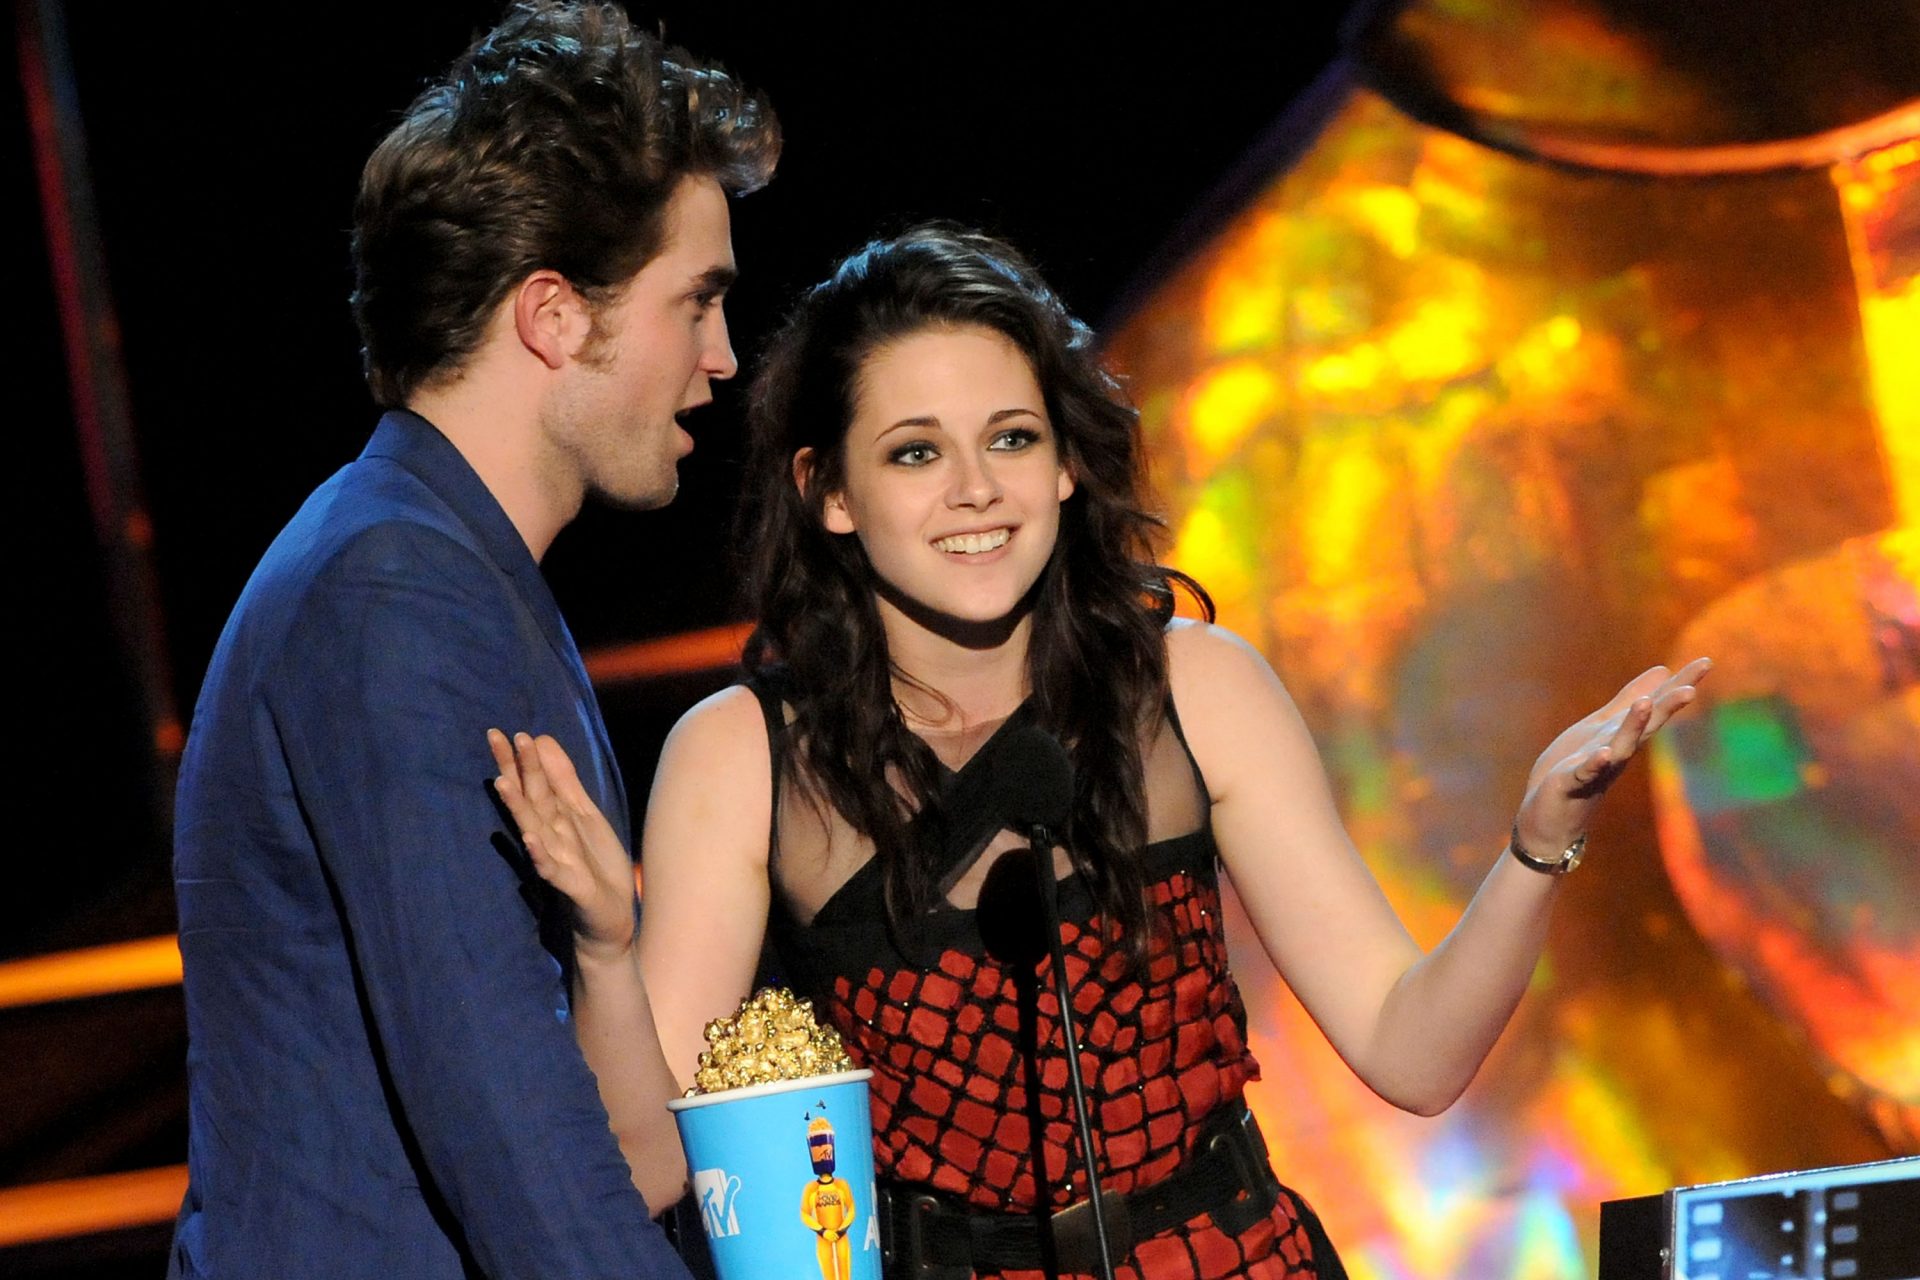 <p>Merita una menzione speciale la consegna del premio al miglior bacio agli MTV Movie Award 2009, quando hanno finto di volersi baciare ma, all'ultimo momento, non l'hanno fatto e si sono ringraziati a vicenda. Una scena indimenticabile.</p>